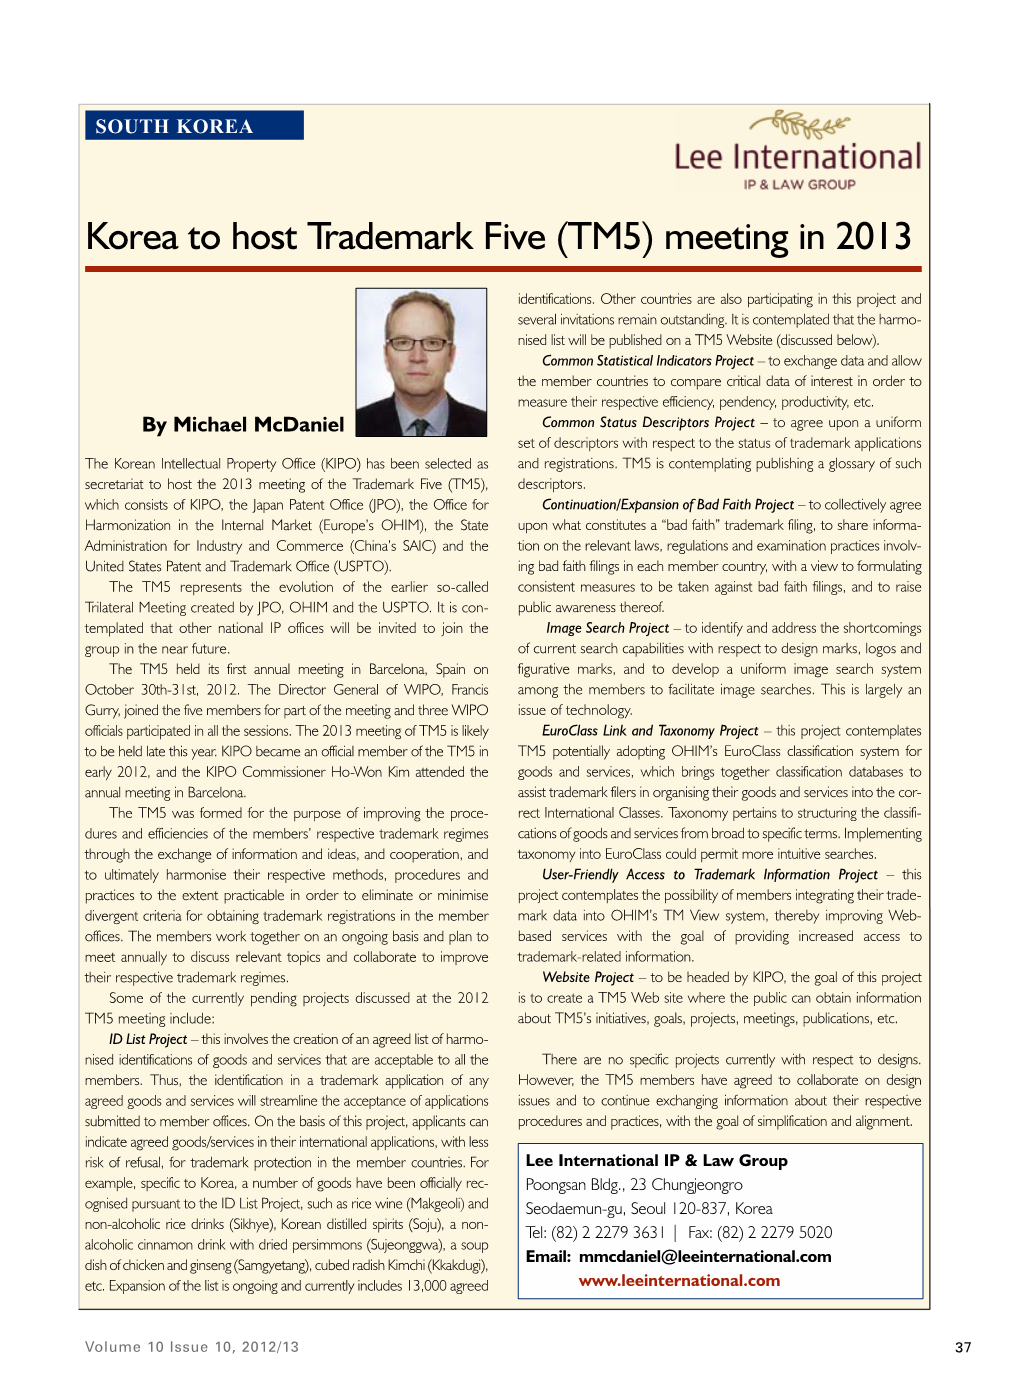 Korea to Host Trademark Five (TM5) Meeting in 2013